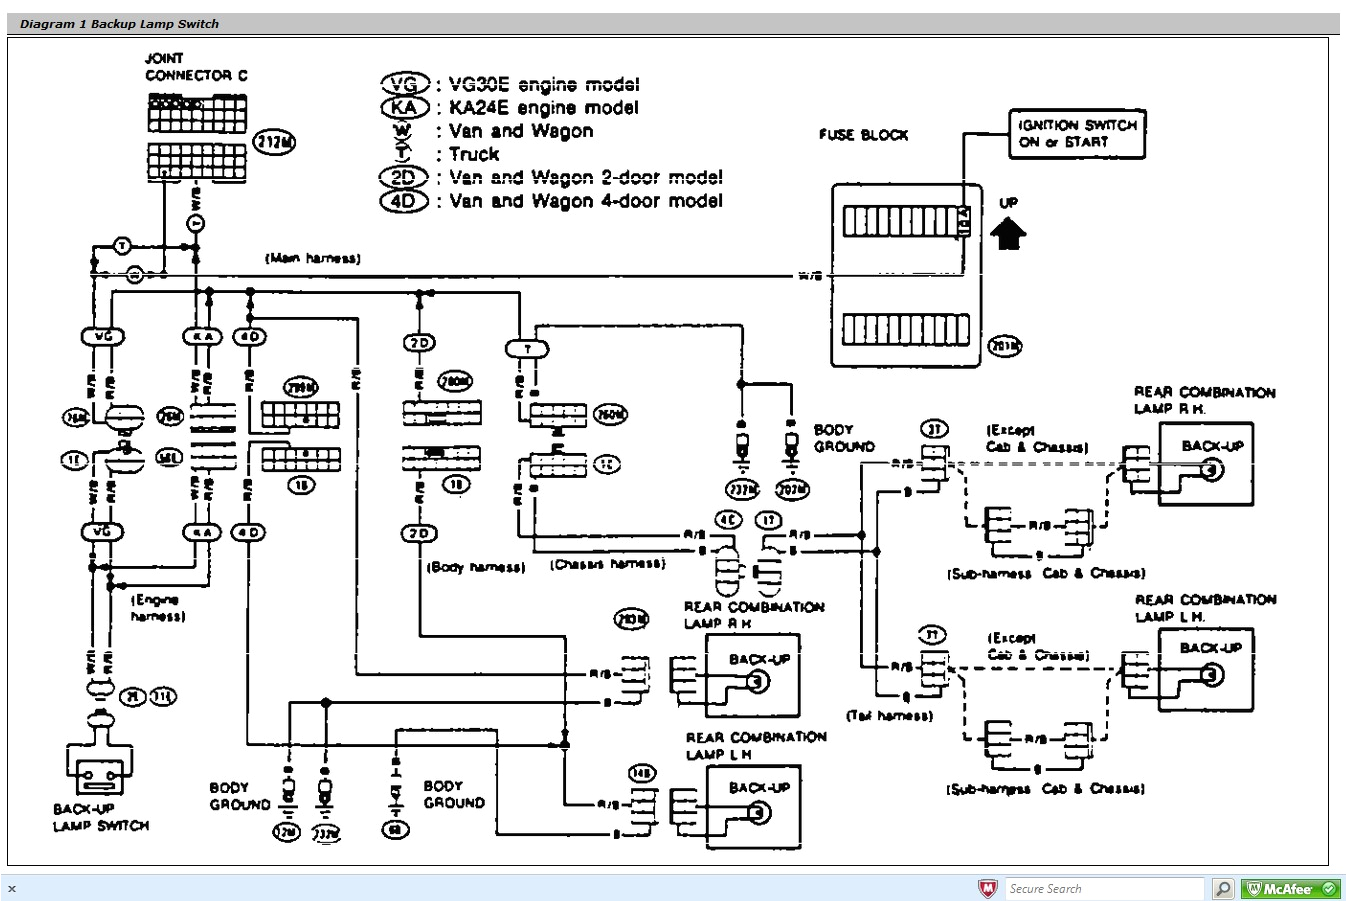 wiring diagram navara d40 schema diagram database wiring diagram nissan navara d40 wiring diagram navara d40